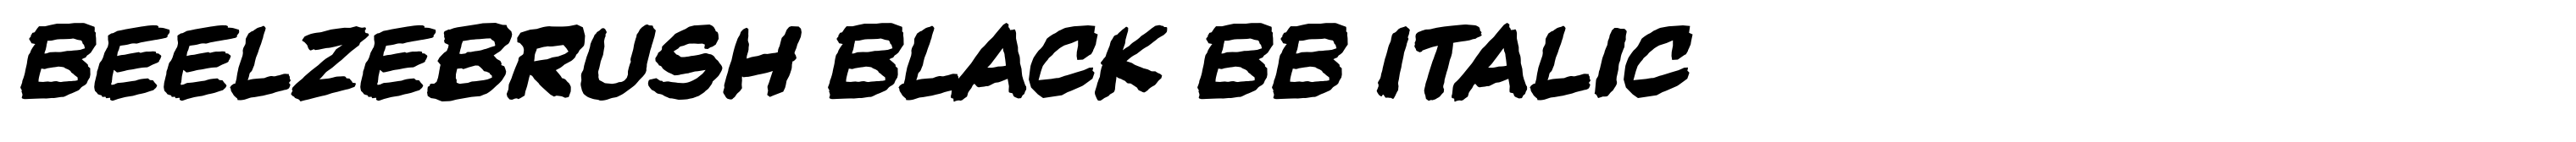 Beelzebrush Black BB Italic